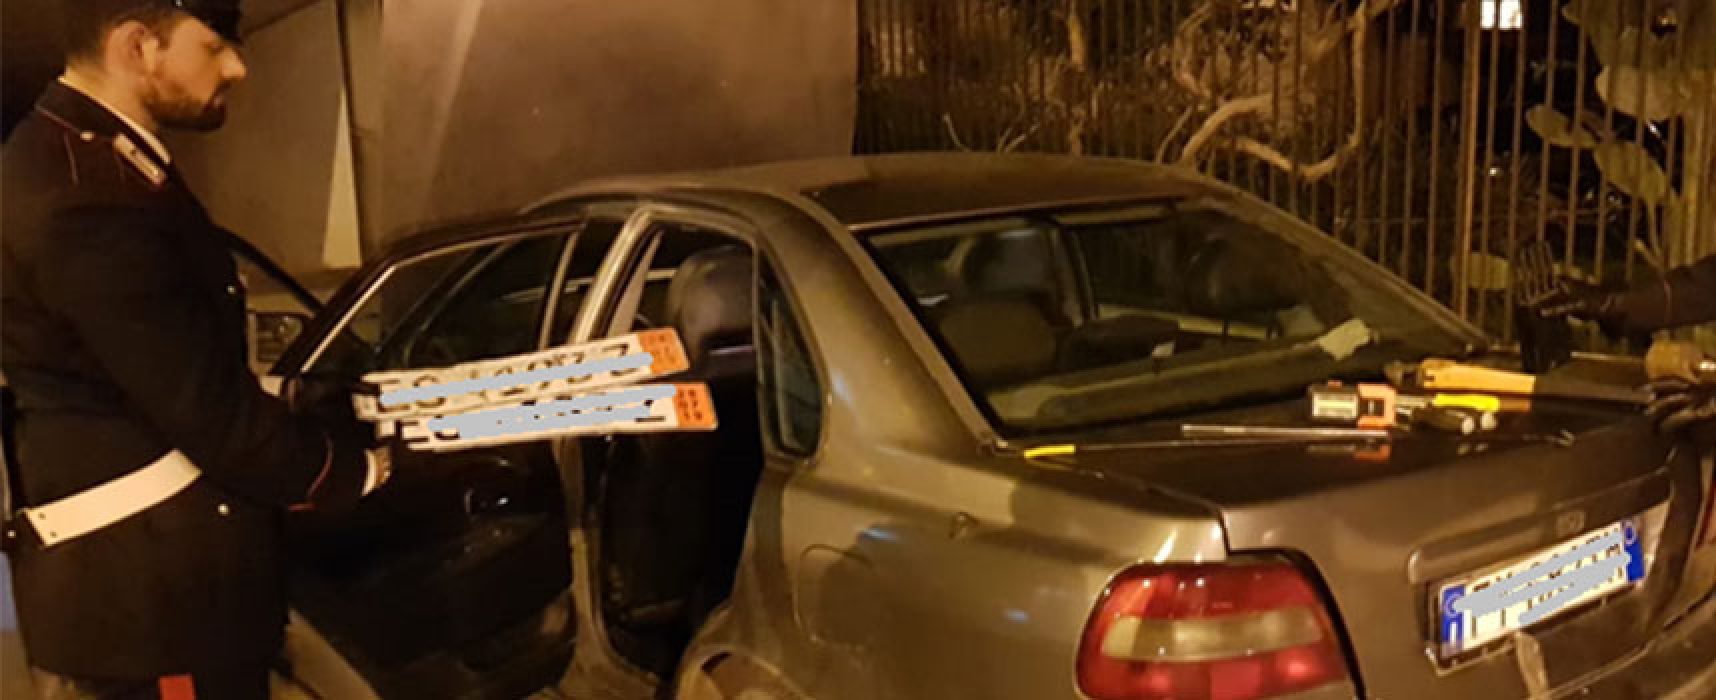 Con targhe rubate a Bisceglie  eseguivano furti di auto, arrestati dai Carabinieri di Andria